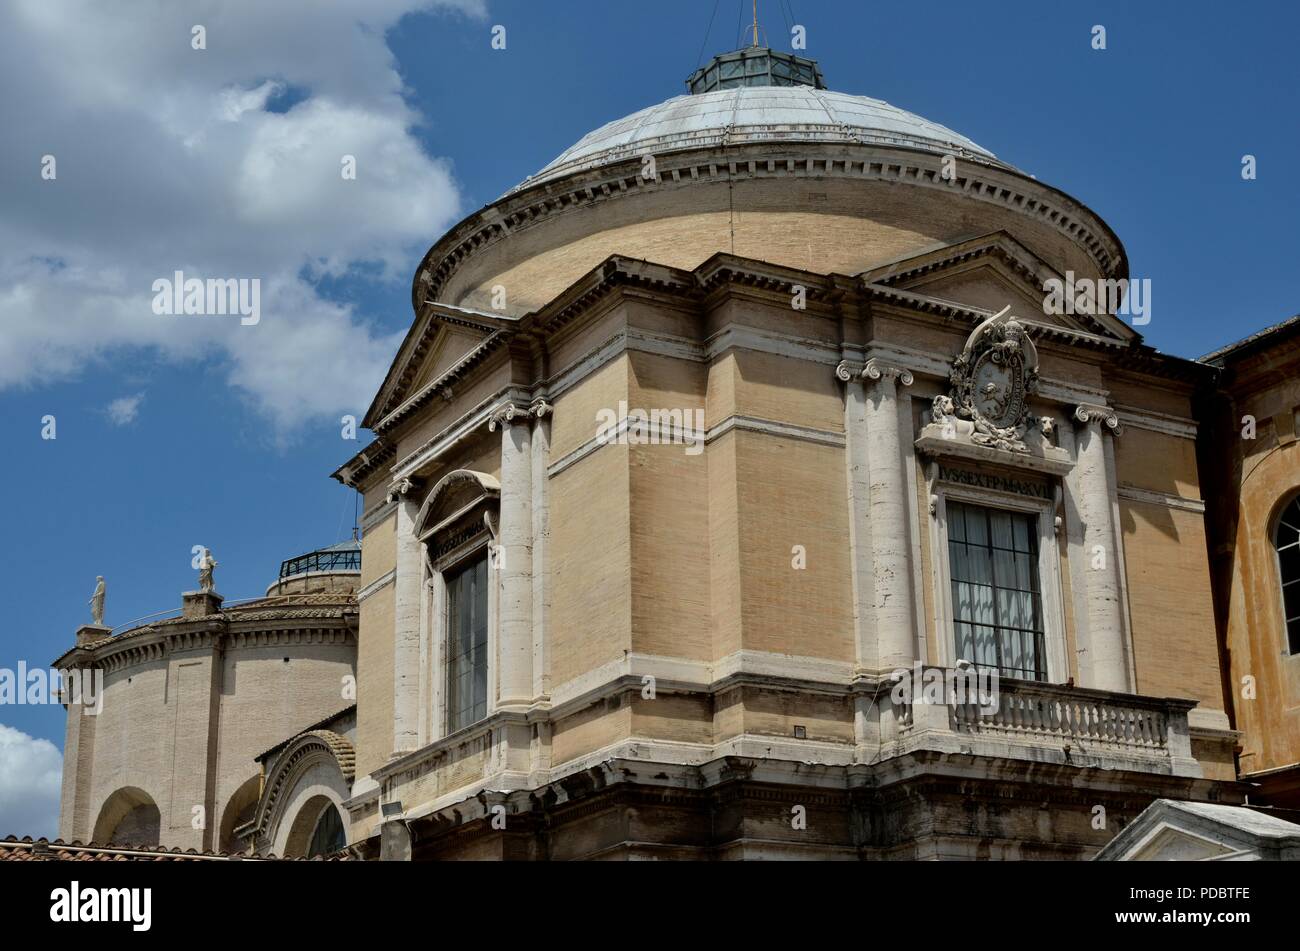 Le Musée du Vatican, l'un des sites les plus visités de la Cité du Vatican, Rome, Italie, Europe Banque D'Images